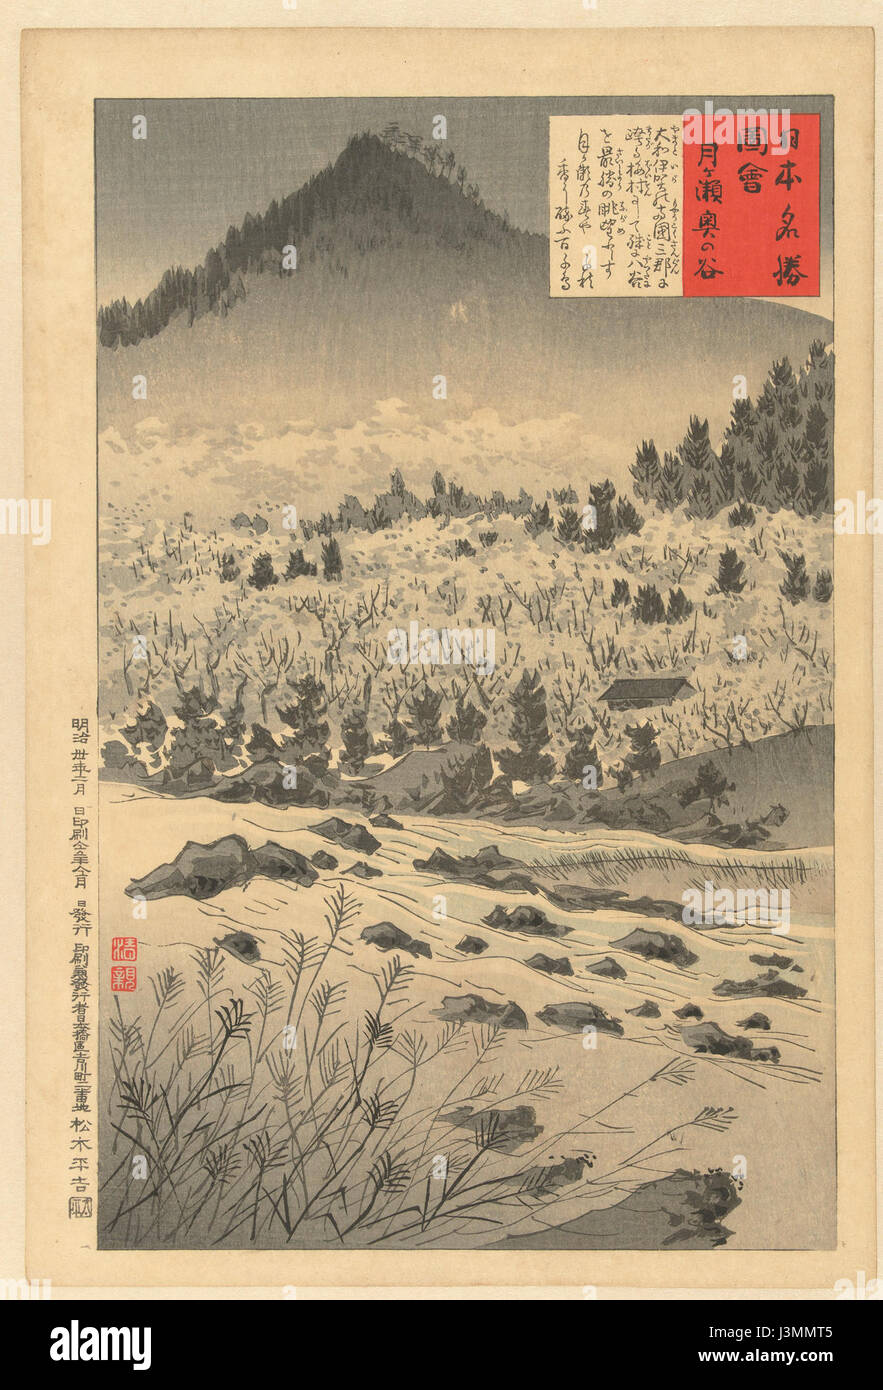 Het Hart van de vallei te Tsukigase Rijksmuseum RP P 1989 217 Foto Stock